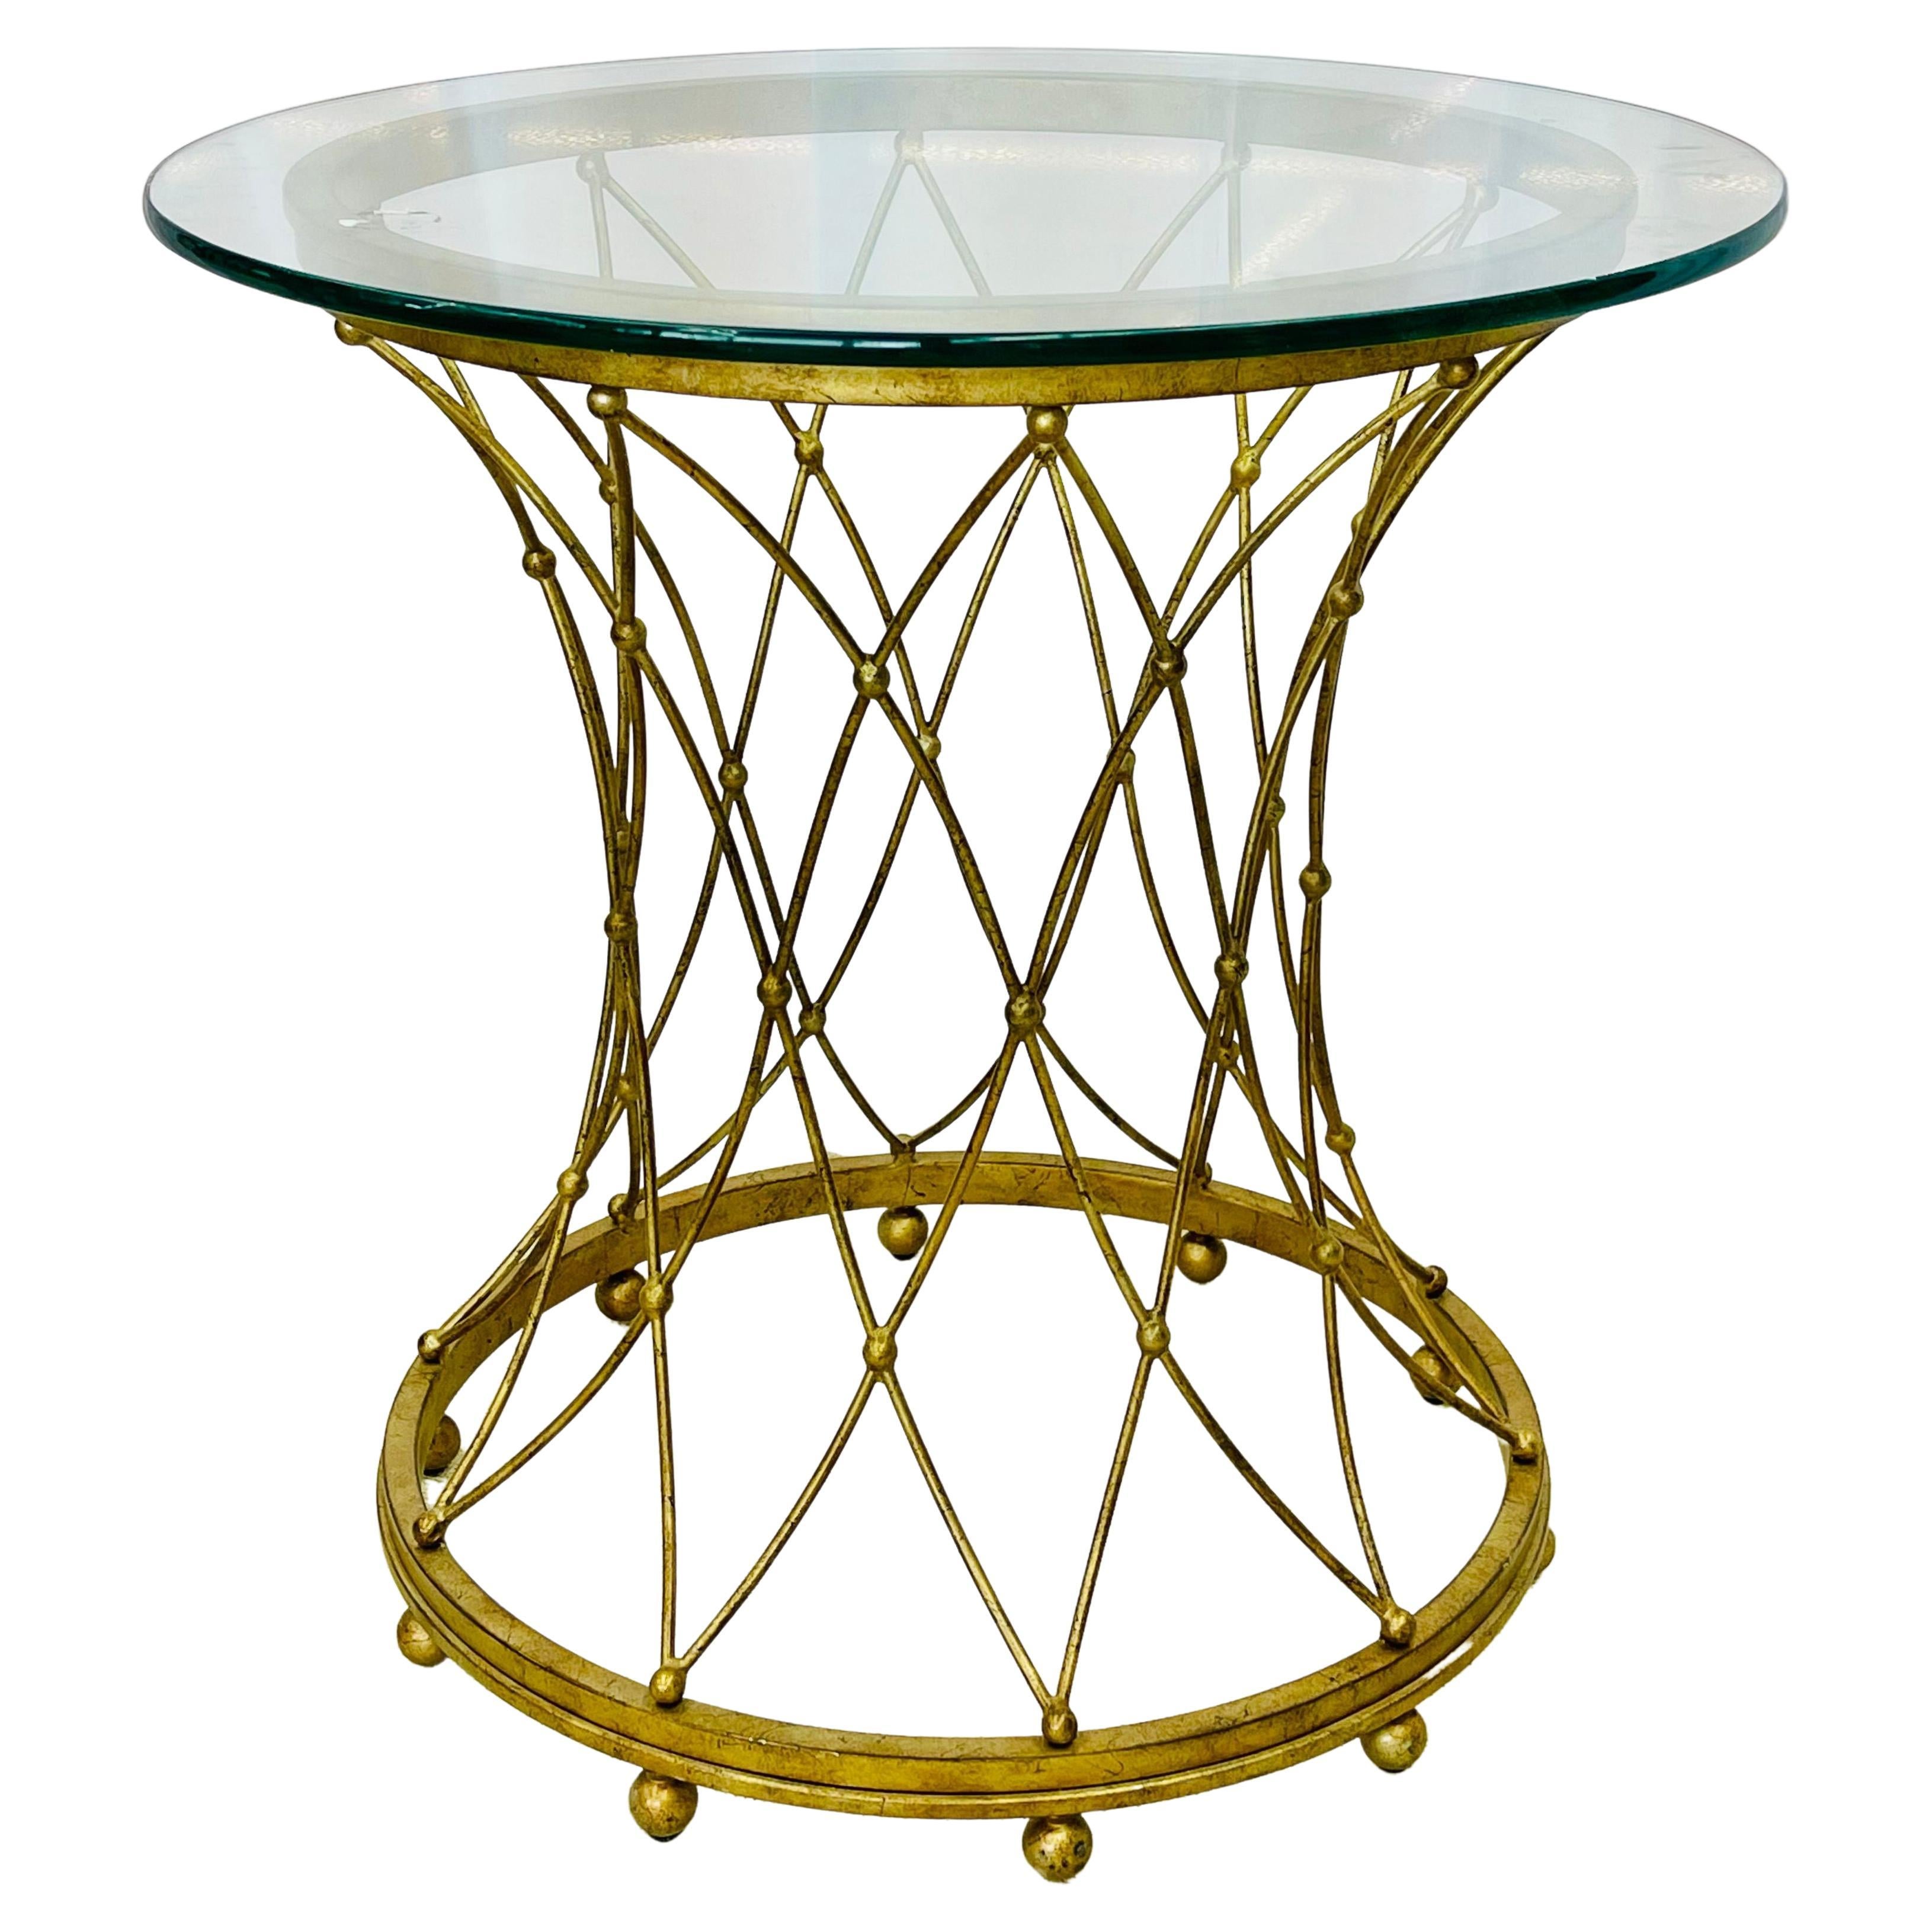 Table basse ronde en métal doré de style néoclassique, Maison Jansen, table d'appoint